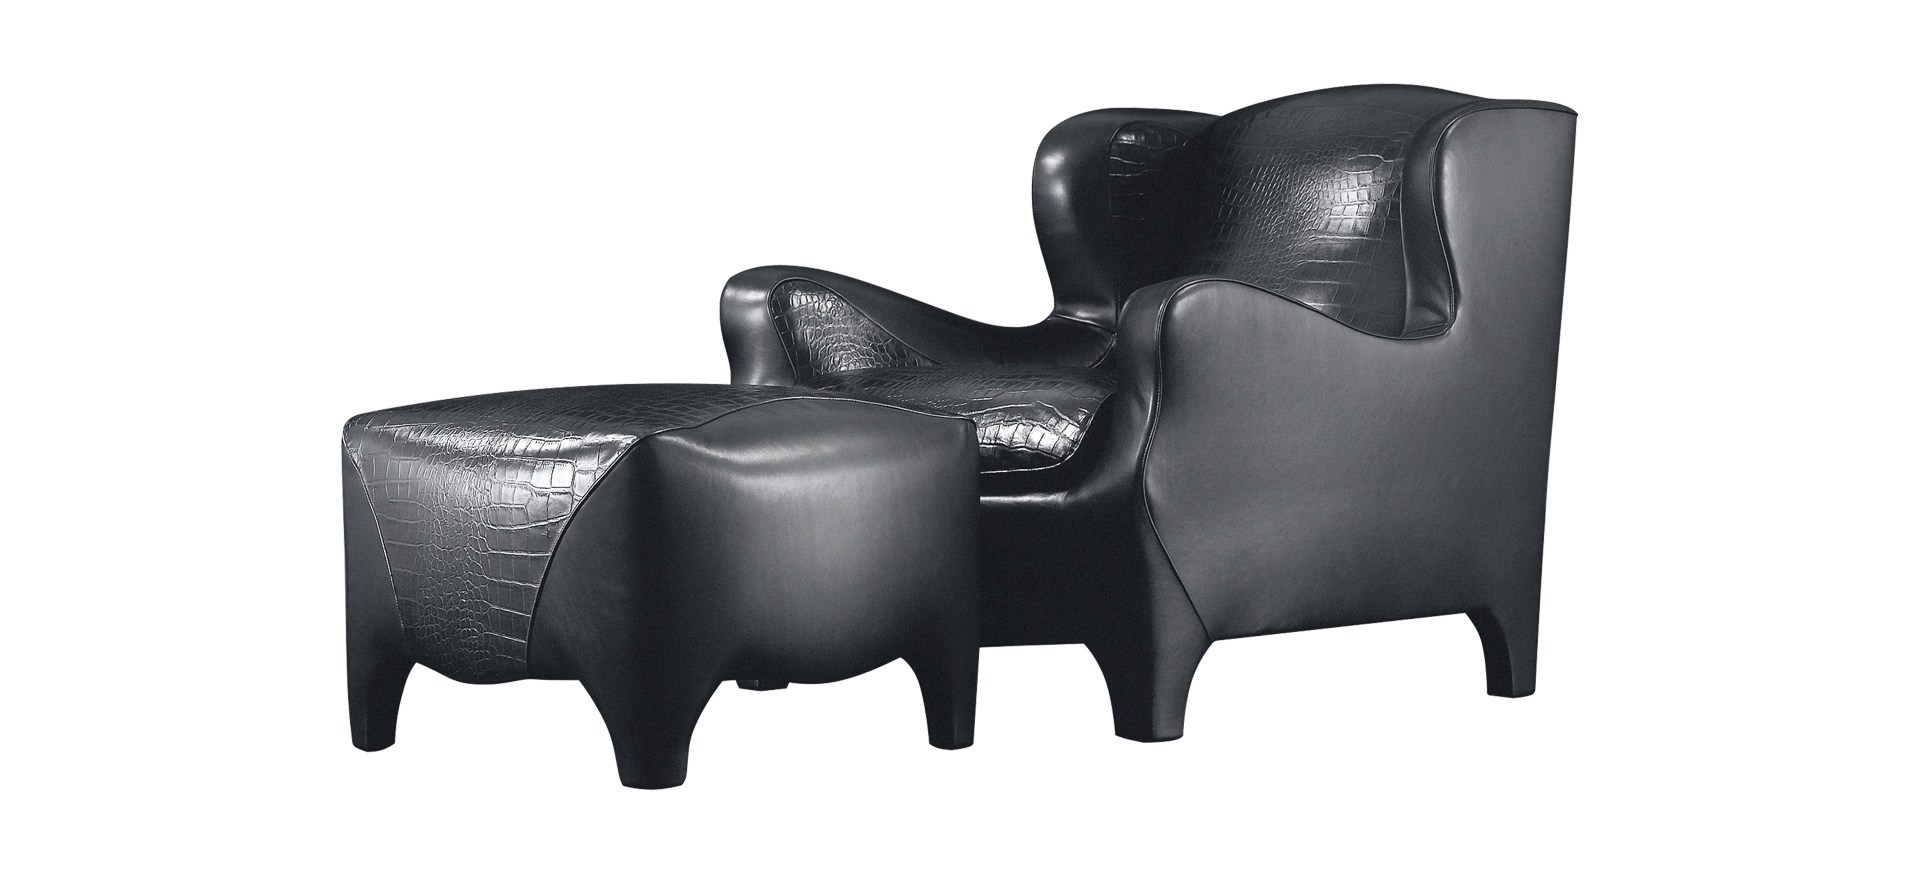 „Club“ ist ein Sessel mit Innenseite aus Stoff oder Leder und Außenseite aus Leder, aus dem Katalog von Promemoria | Promemoria